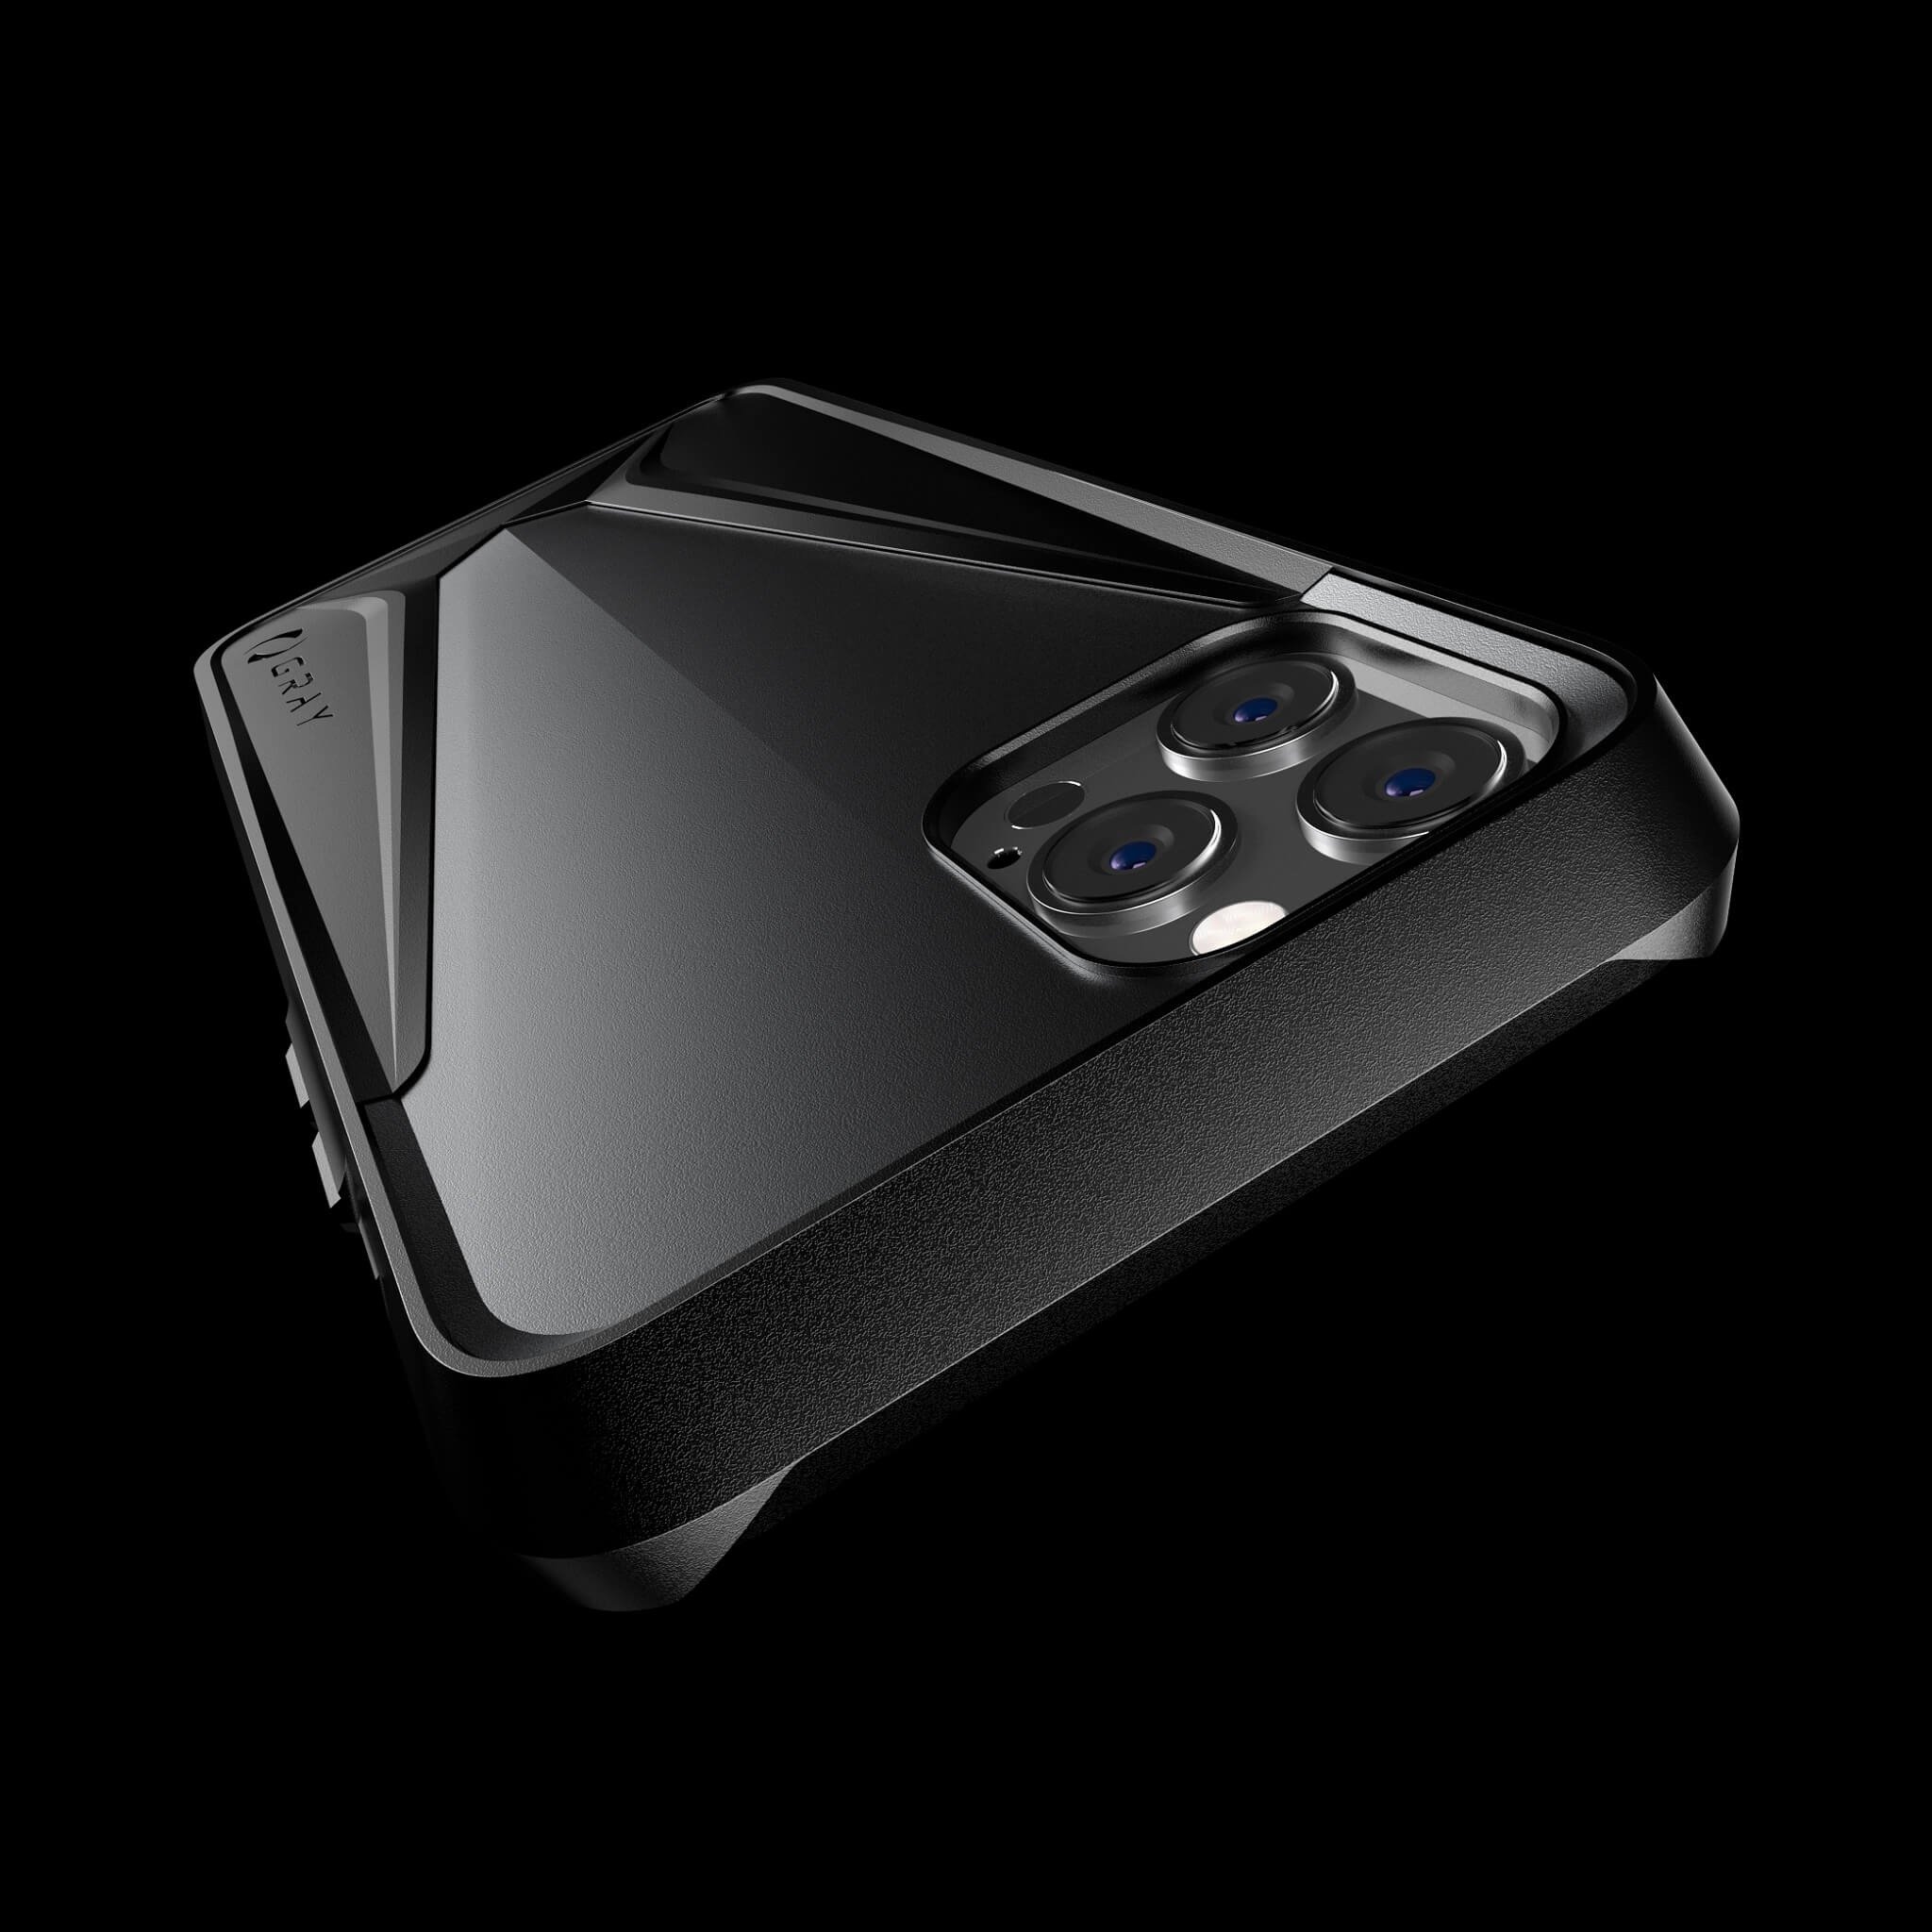 morpheus gray aluminium luxury iPhone 12 pro case